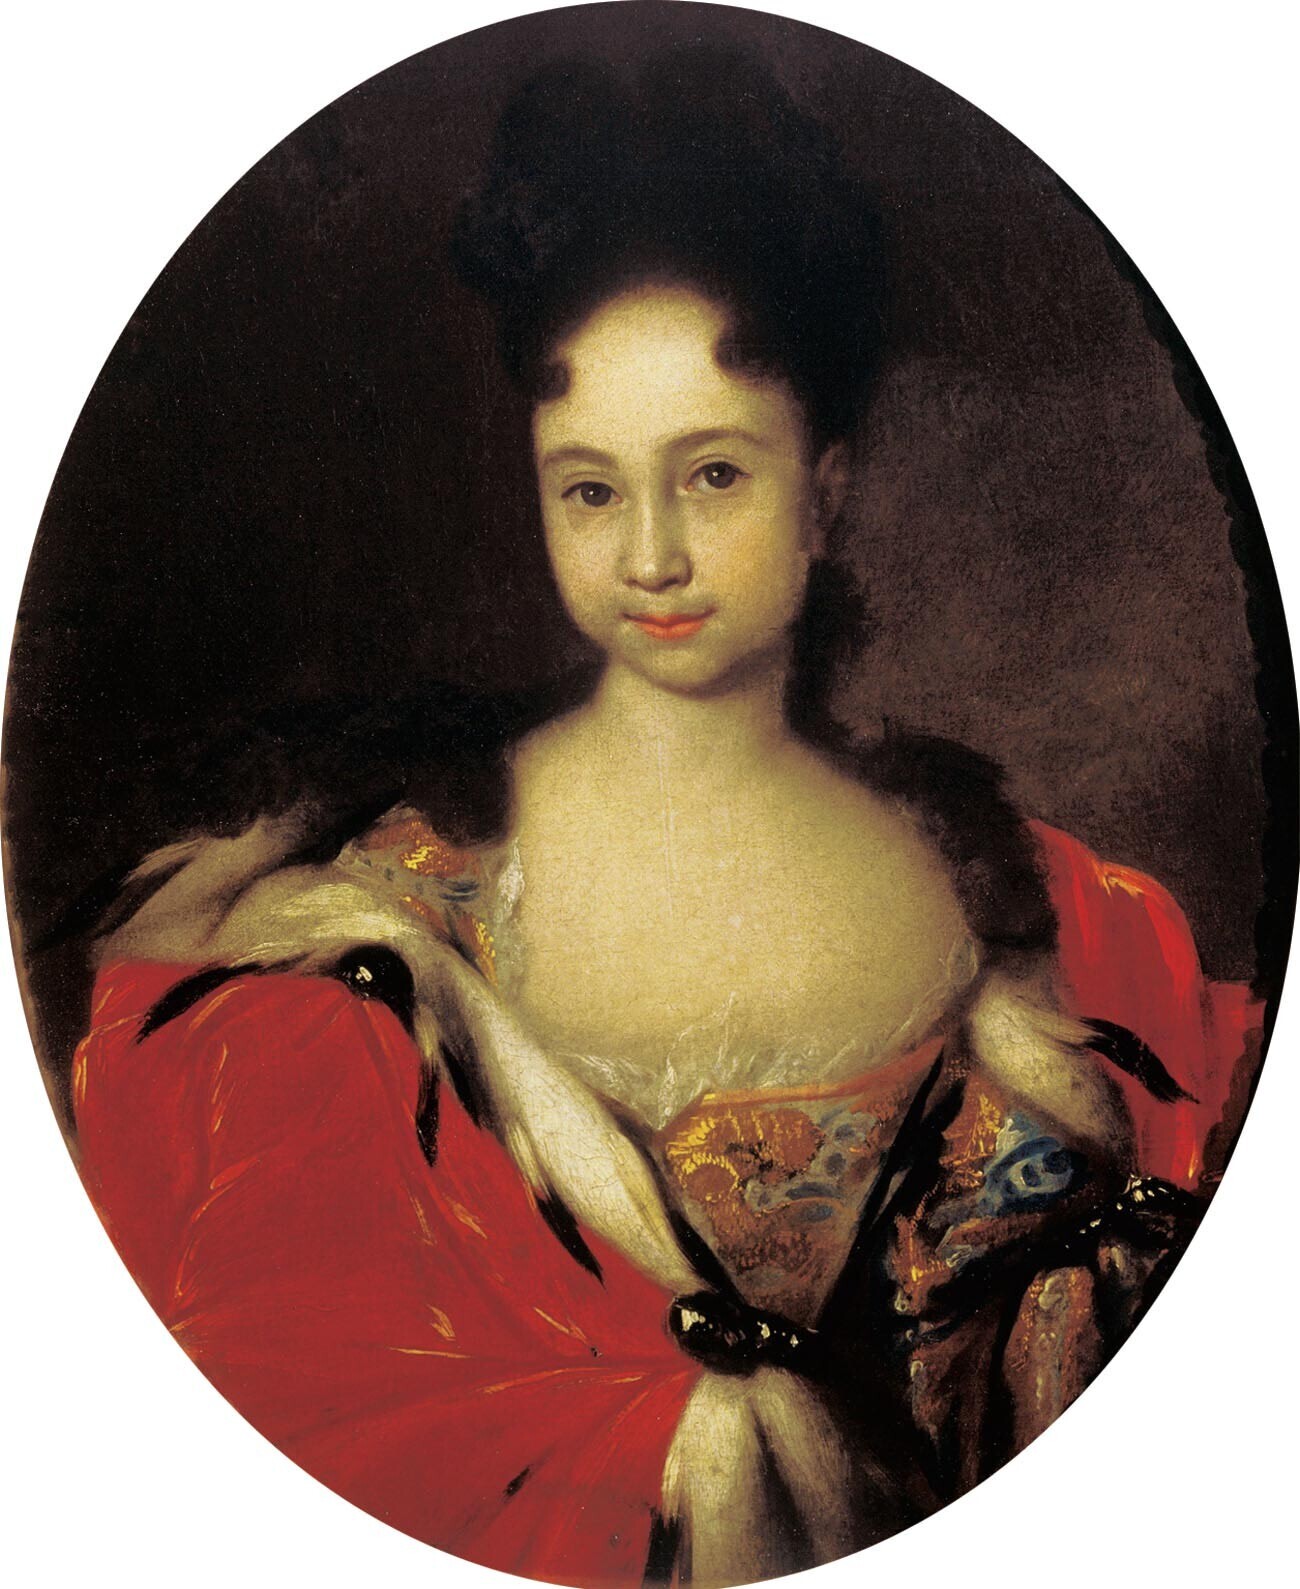 Anna Petrovna

